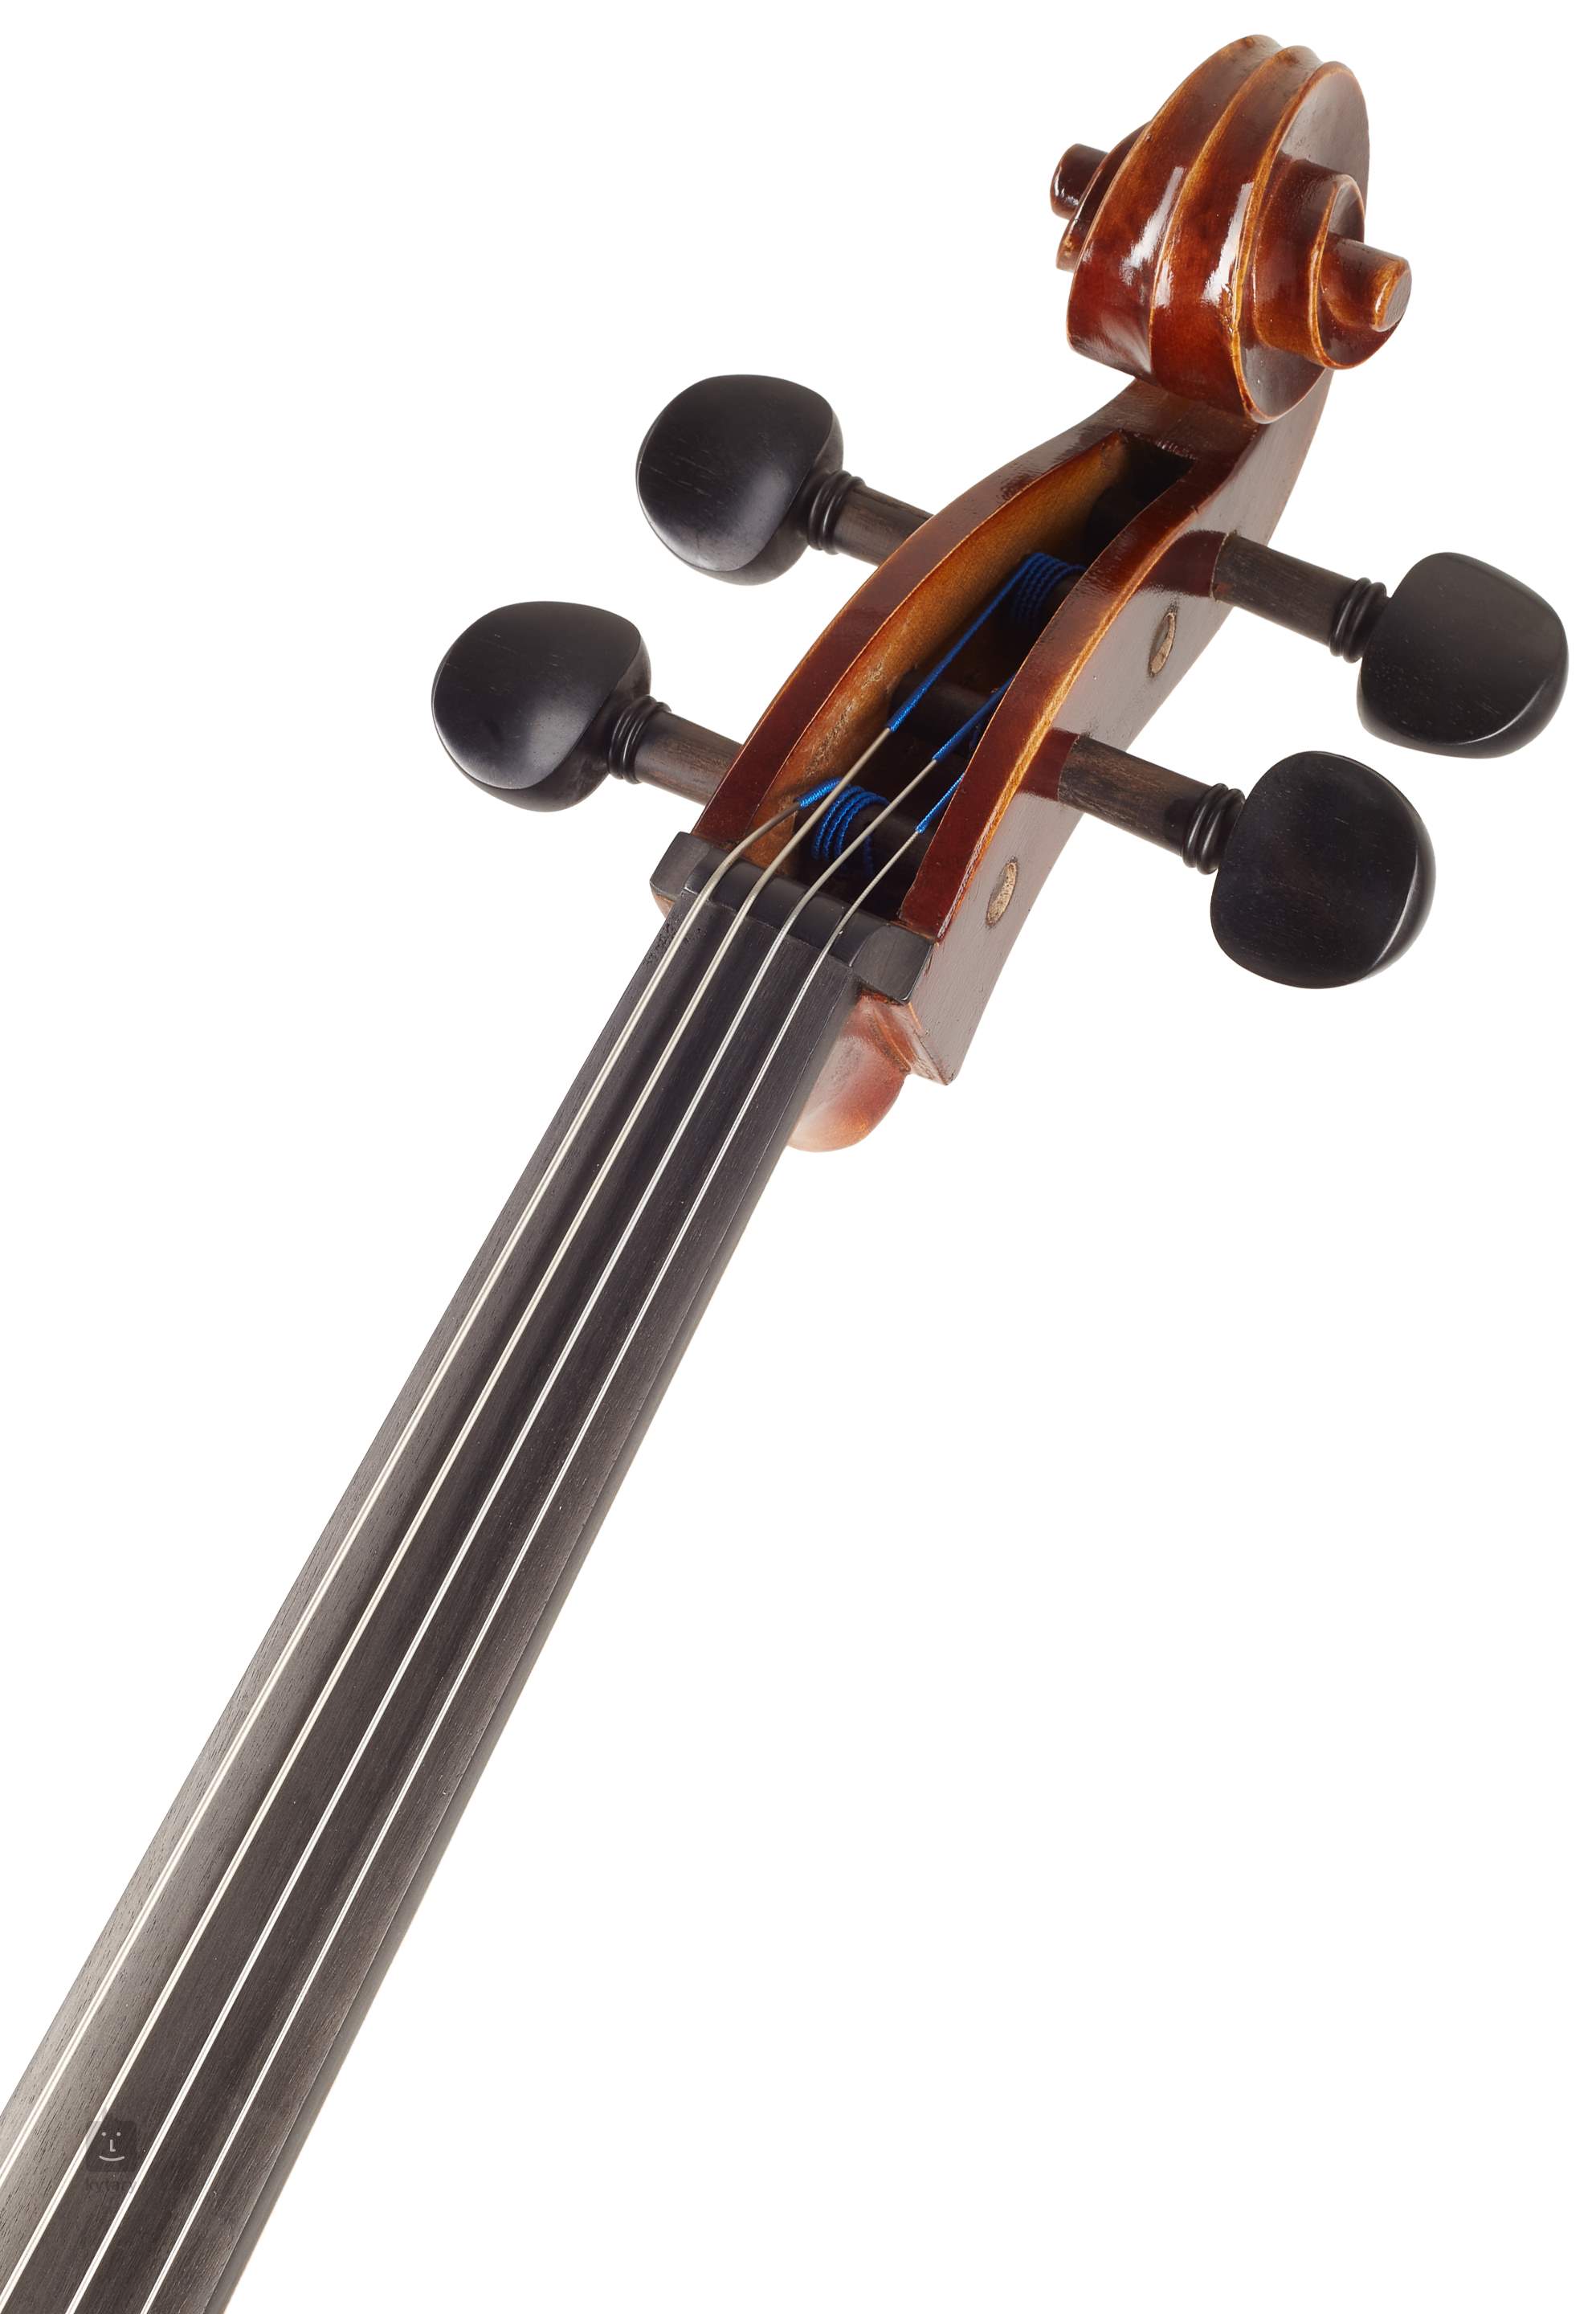 avec Allegro Ensemble de corde de violon 1/4-1/16 Noir FOM Épaulière réglable pliable Épaulière pour violon toutes les tailles 